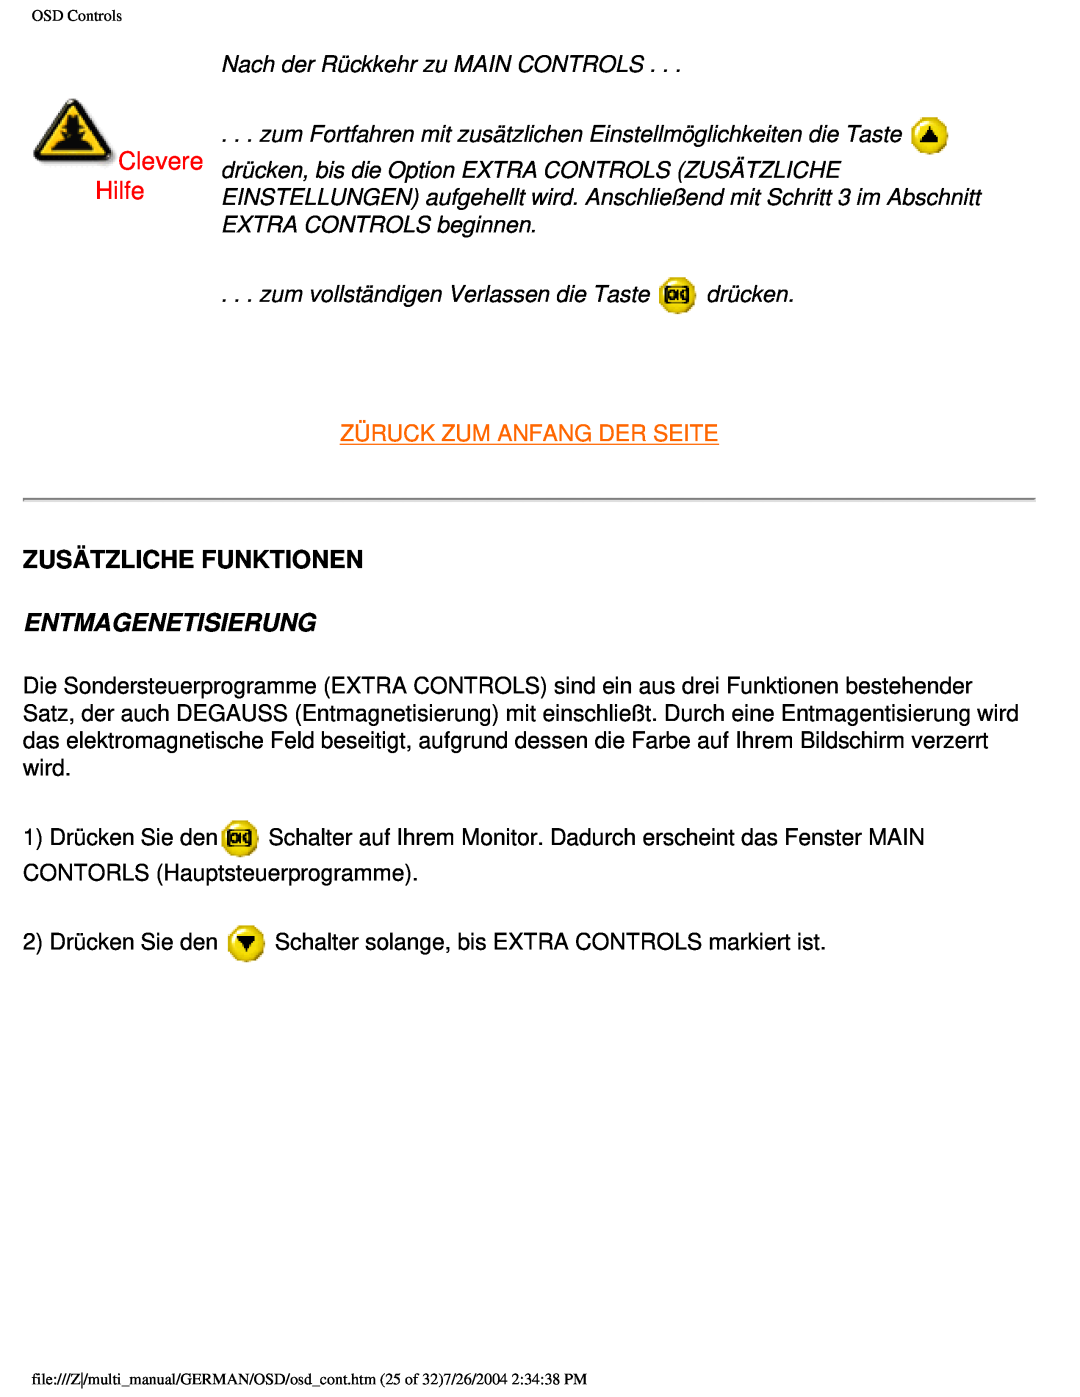 Philips 107X2 user manual Zusätzliche Funktionen, Entmagenetisierung, Clevere Hilfe, Nach der Rückkehr zu MAIN CONTROLS 